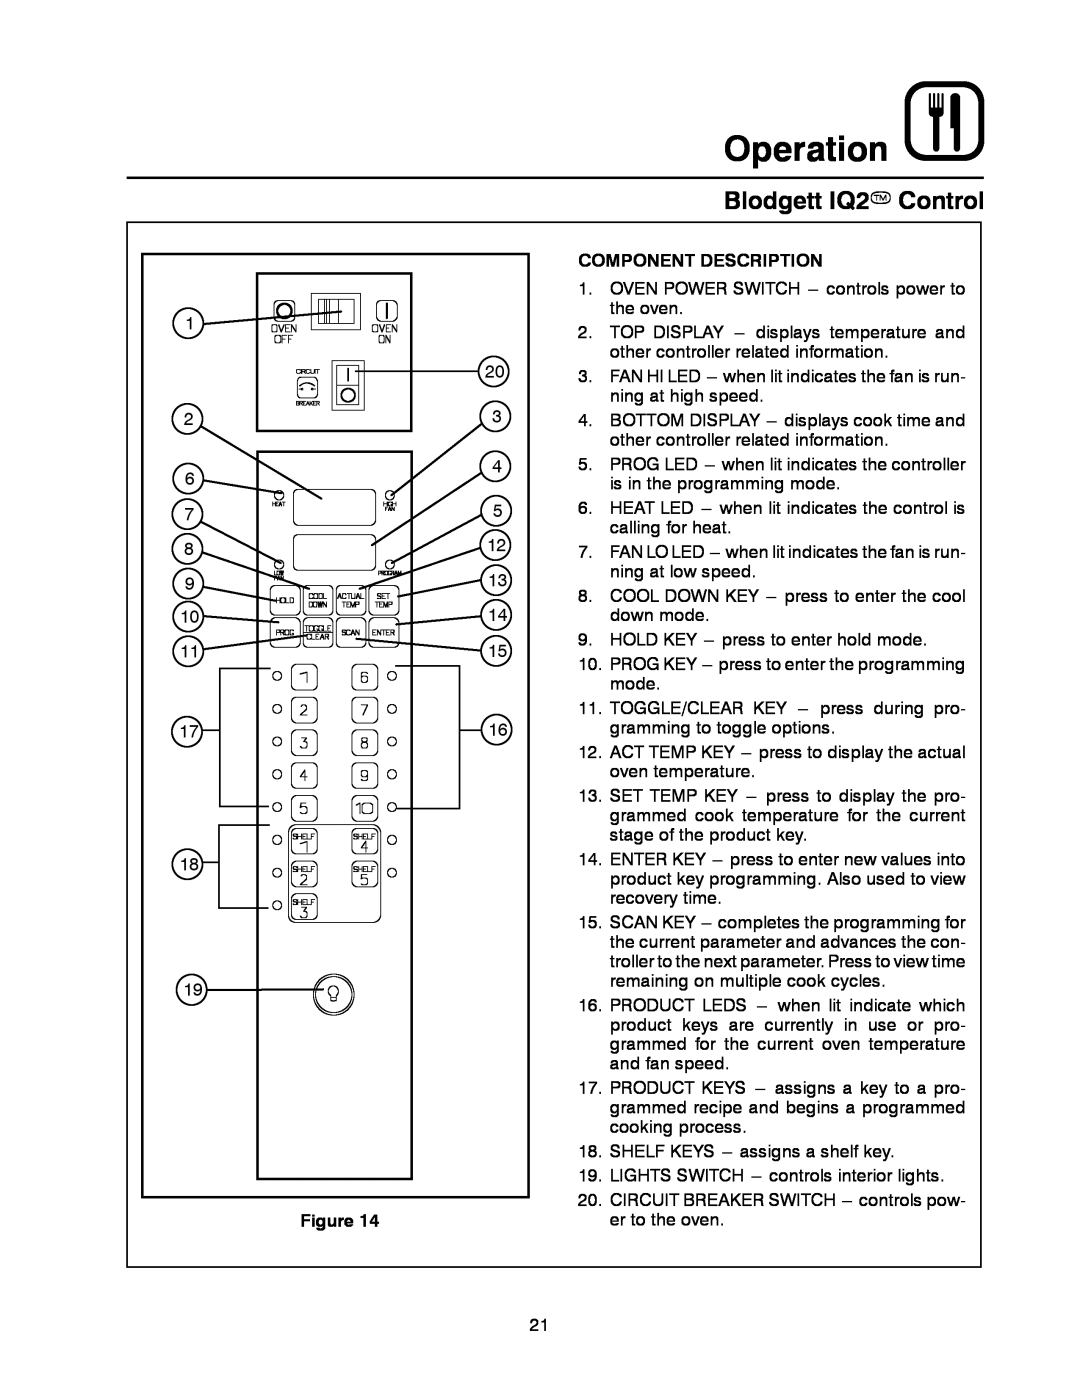 Blodgett MARK V XCEL CONVECTION OVEN manual Operation, Blodgett IQ2T Control, Component Description 